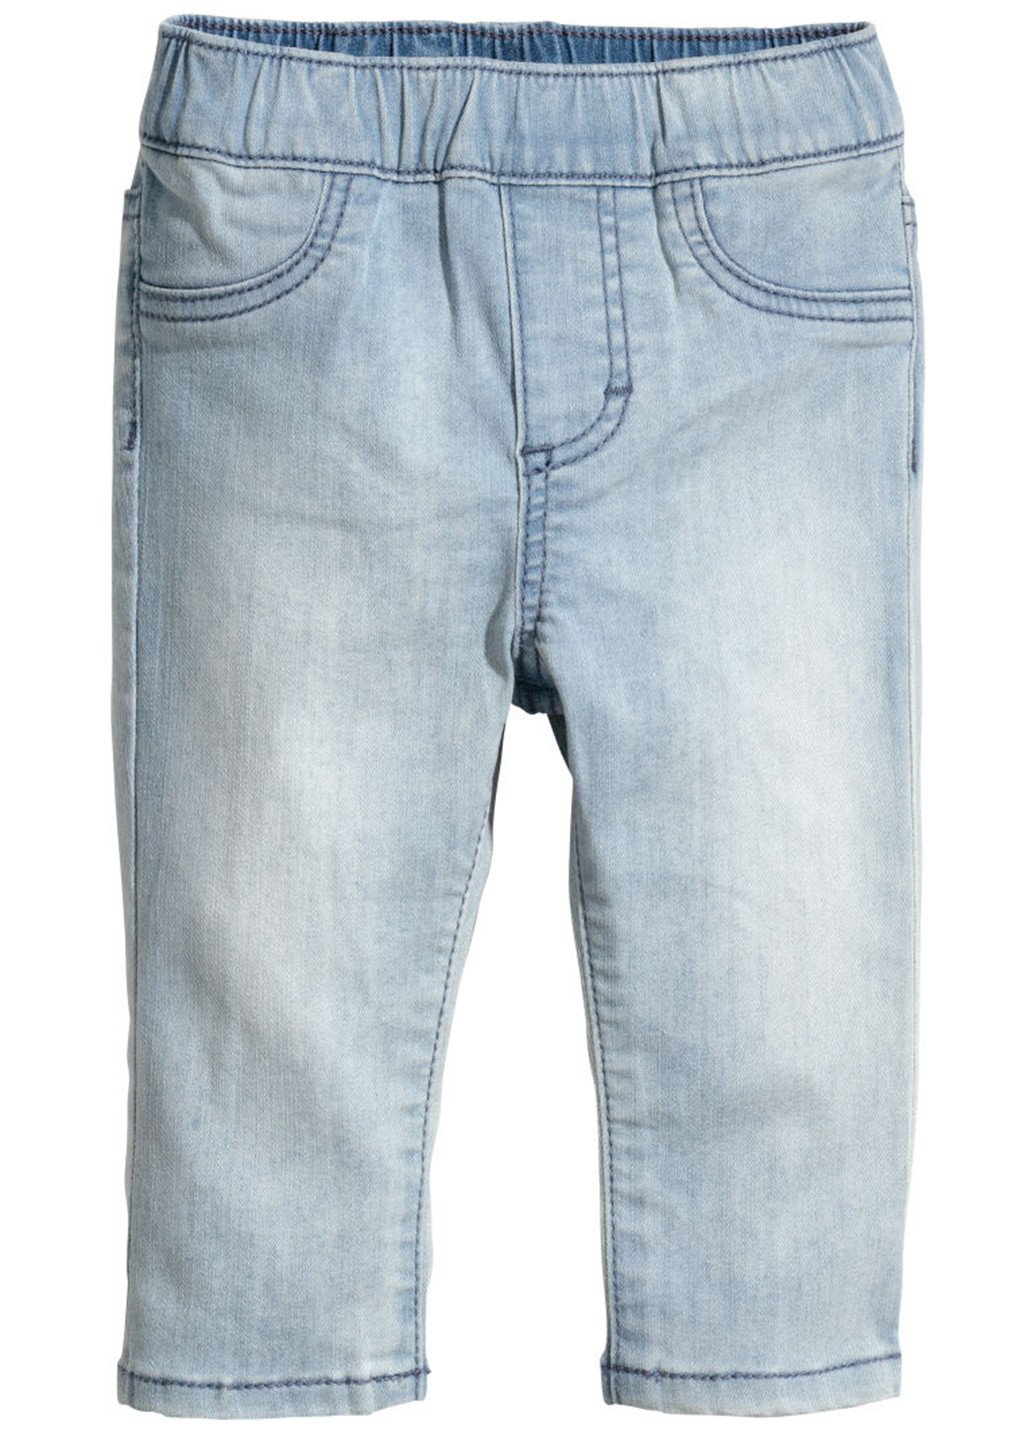 Голубые демисезонные со средней талией джинсы H&M